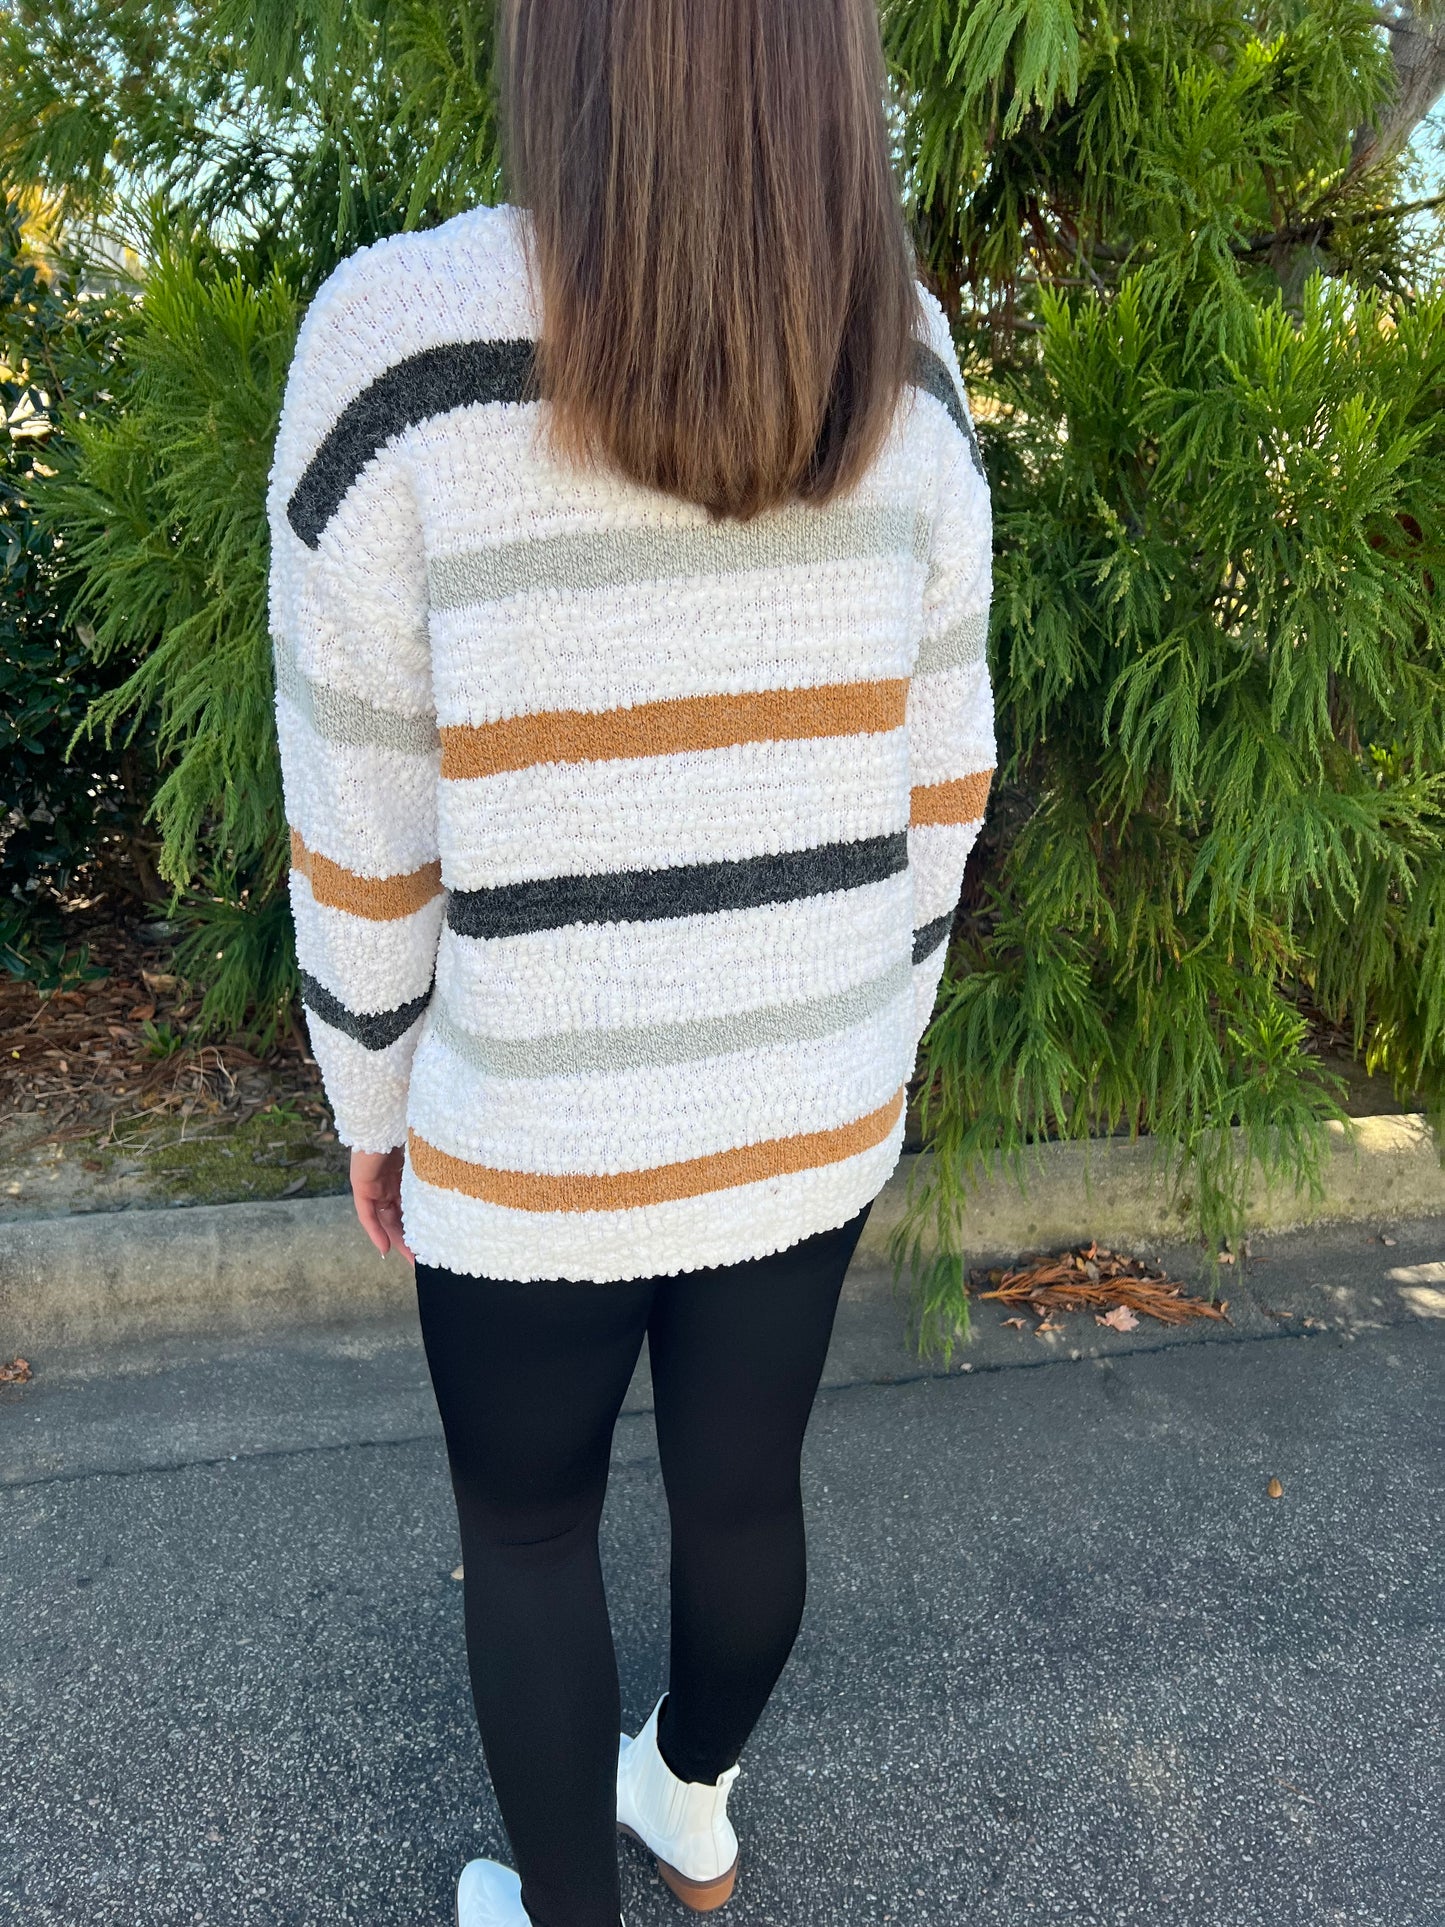 Fuzzy striped sweater